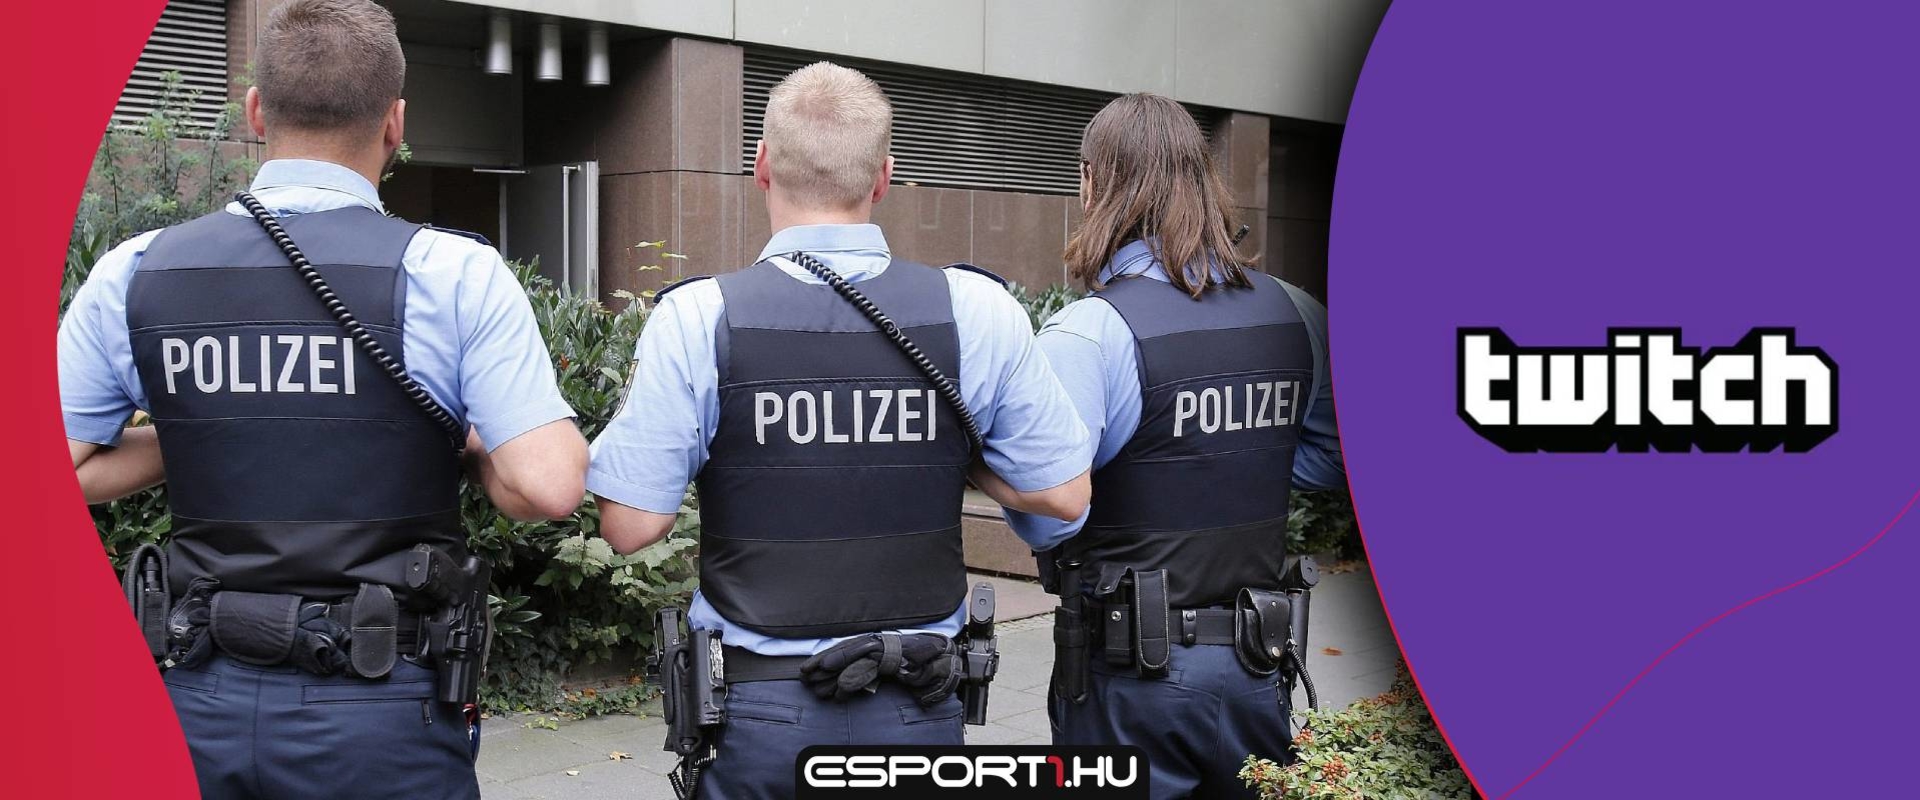 Twitchen, CS:GO kategóriában közvetítette ámokfutását a németországi gyilkos